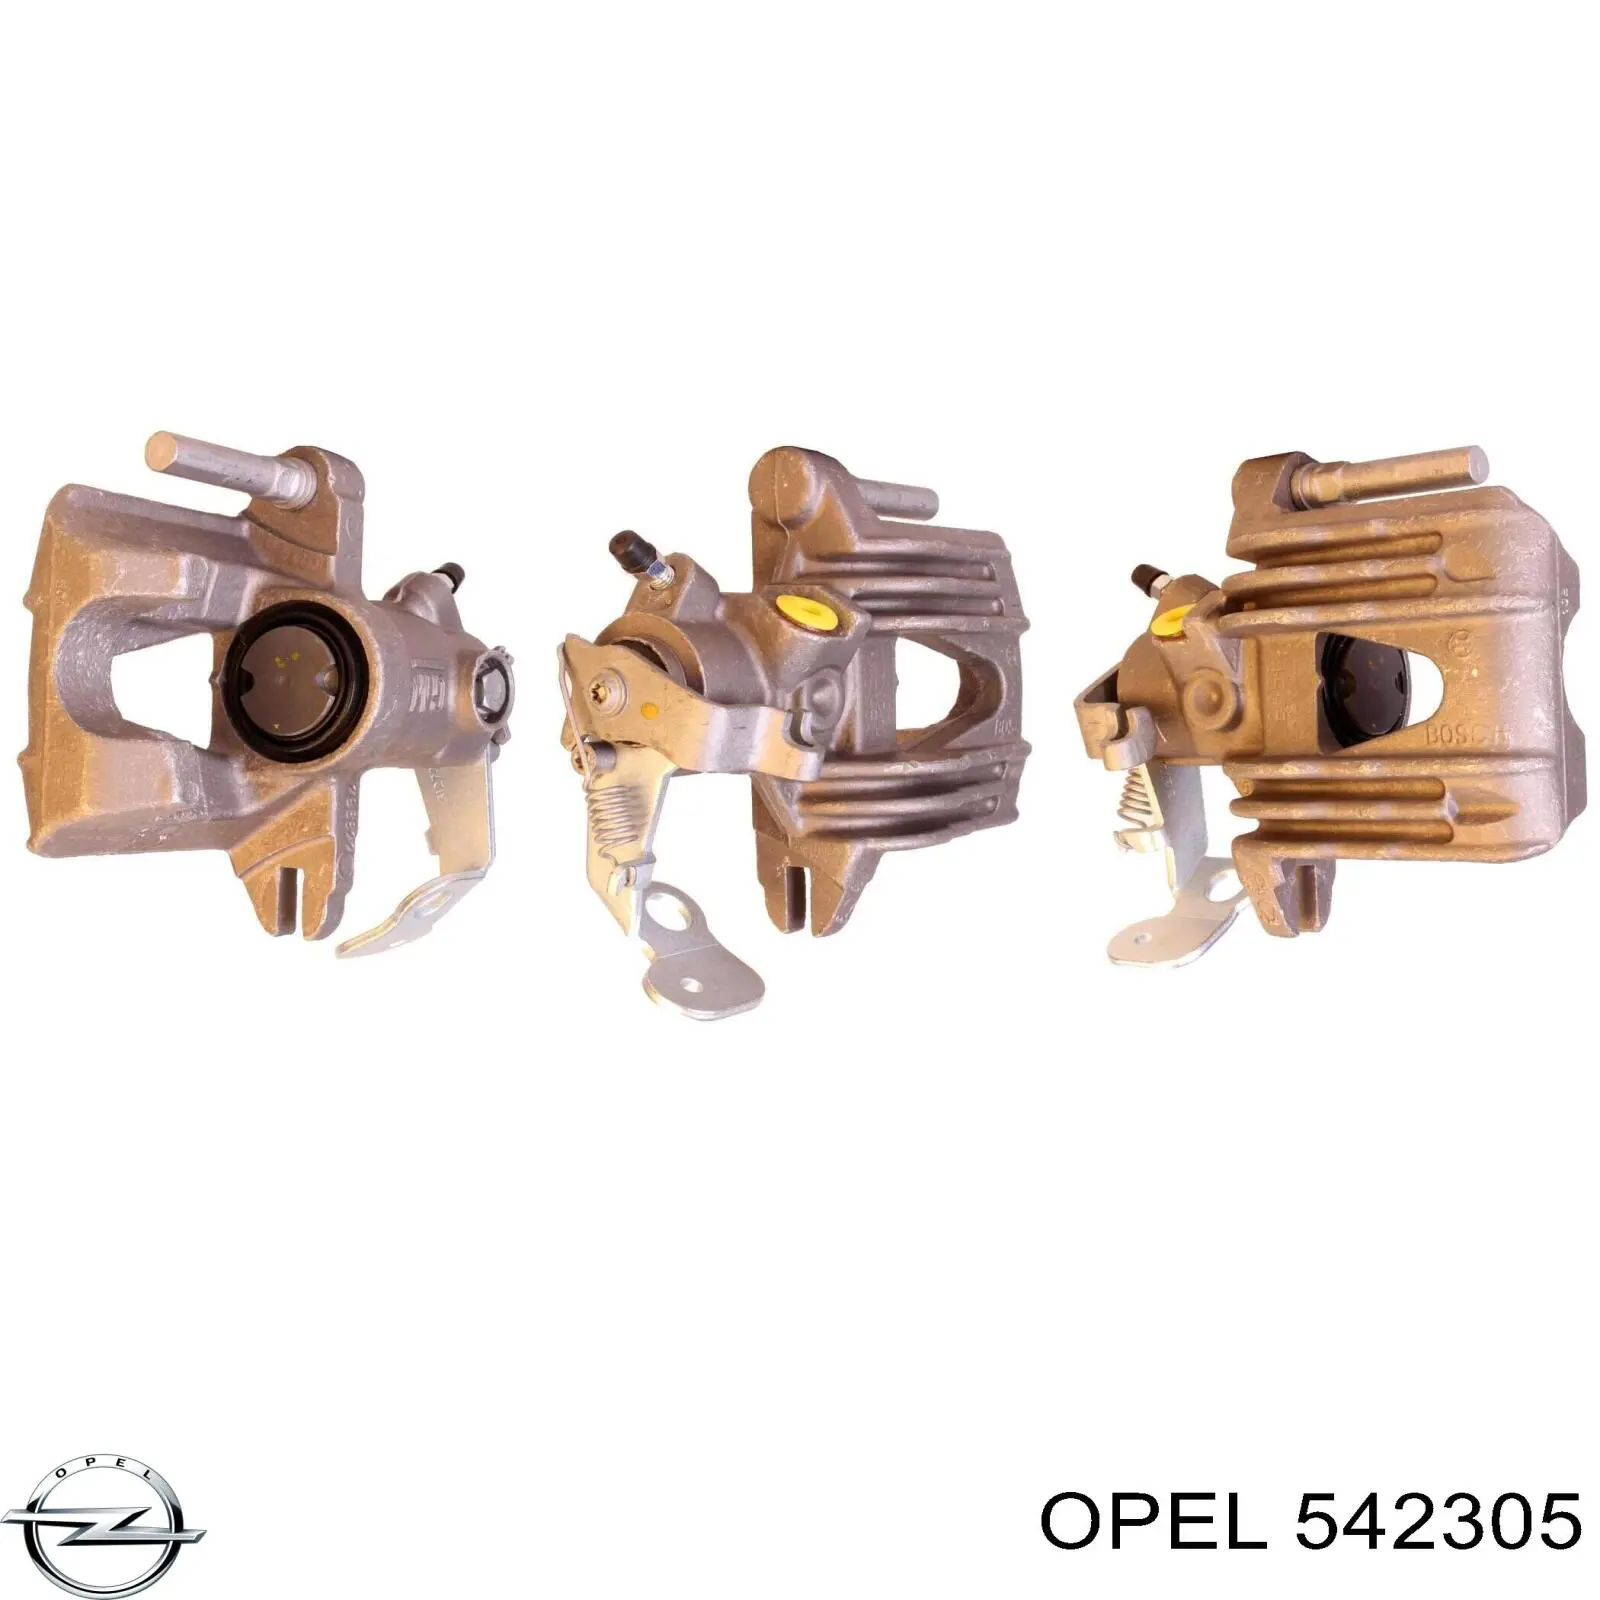 542305 Opel pinza de freno trasero derecho